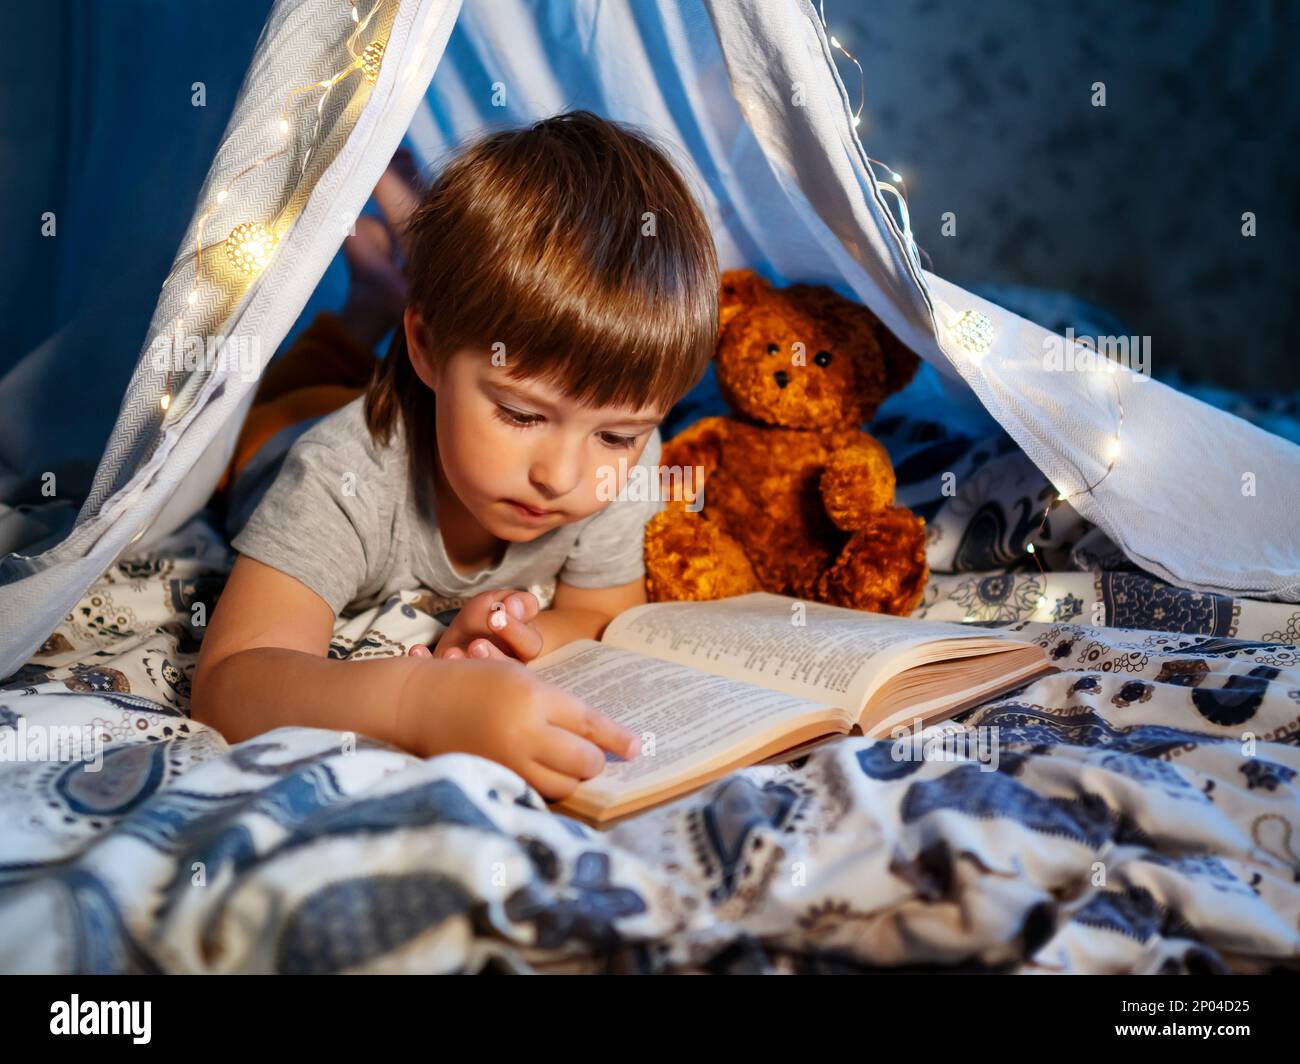 Il ragazzino legge il libro con il suo orsacchiotto. Il bambino gioca in tenda fatta di lenzuola di lino sul letto. Serata accogliente con il libro preferito. Foto Stock